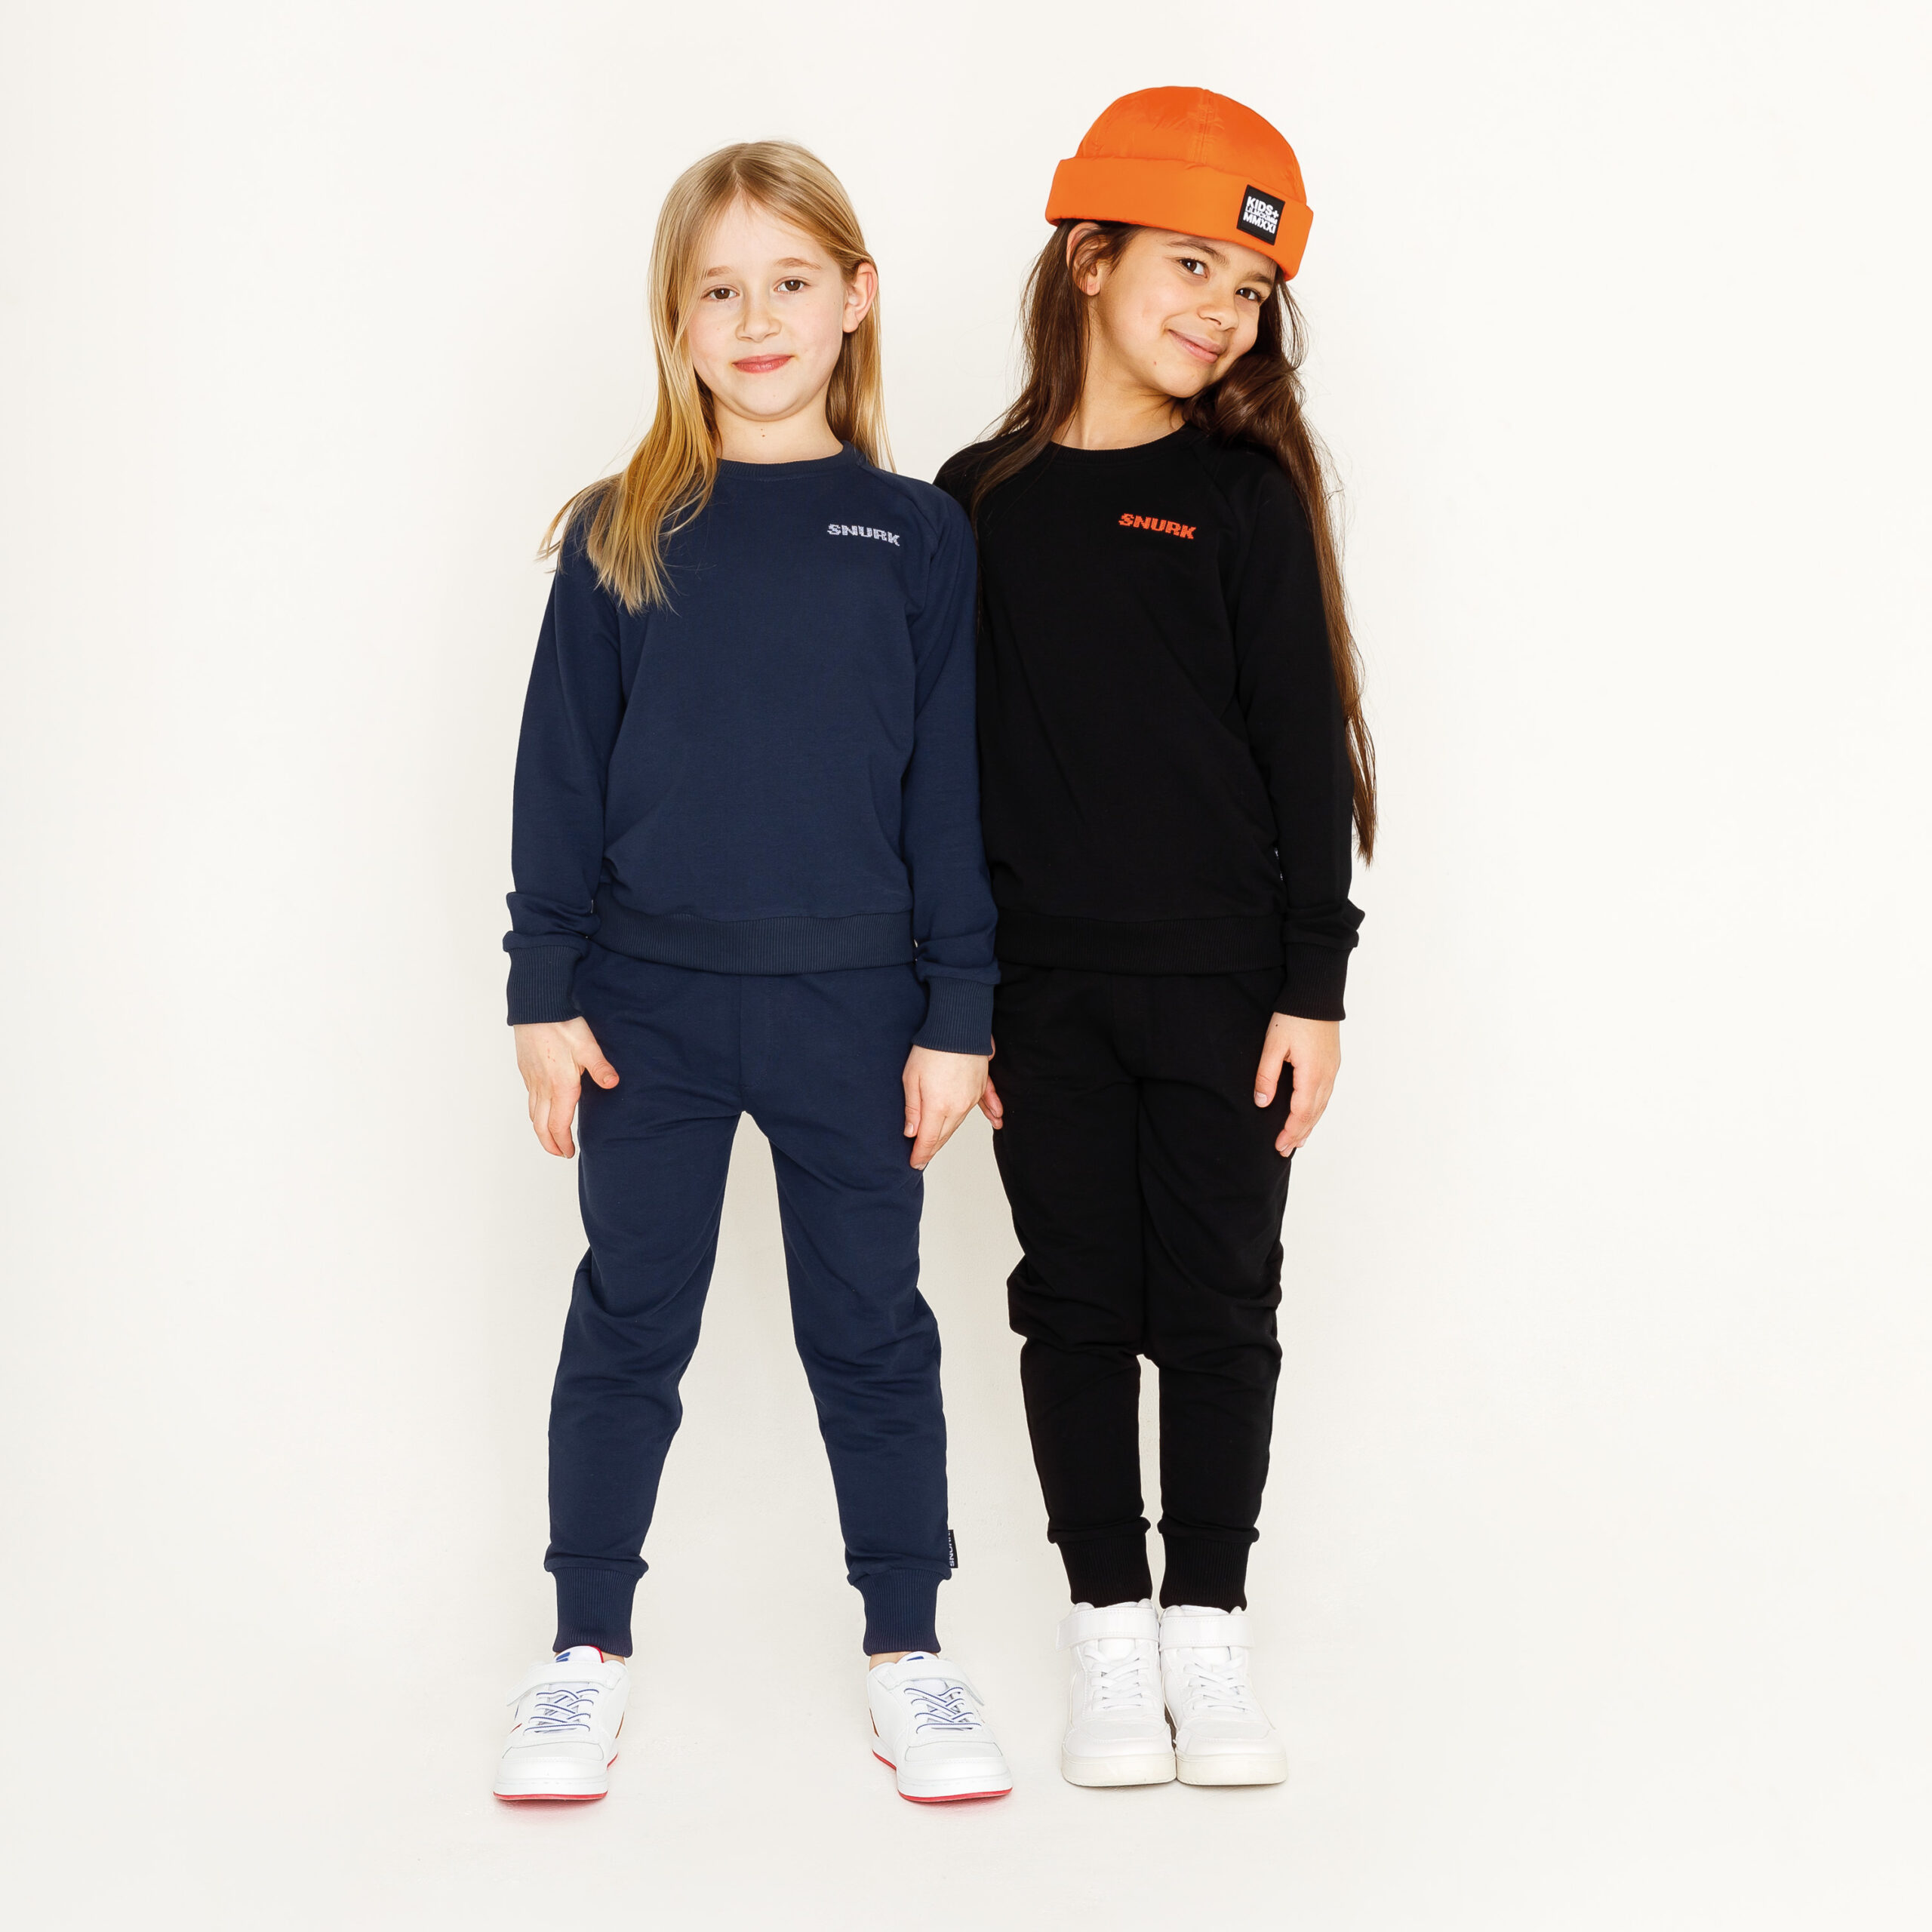 Fashion – lookbook – kids fotografie Zwolle Utrecht Amsterdam Groningen – Stephanie Verhart